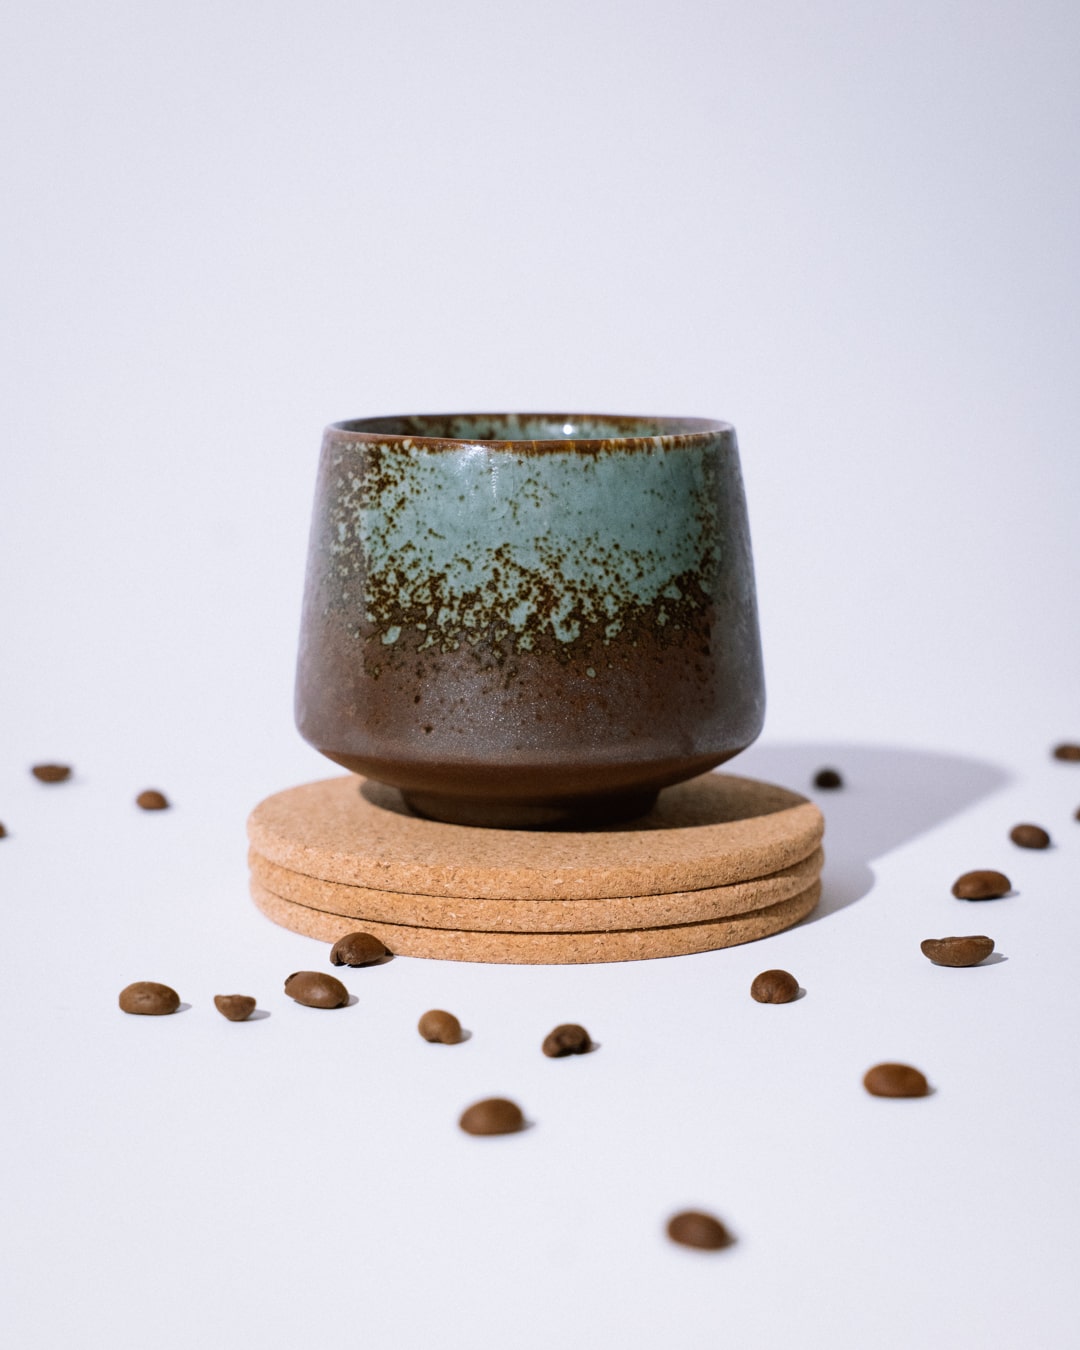 'Mix & Match' Ceramic Cups